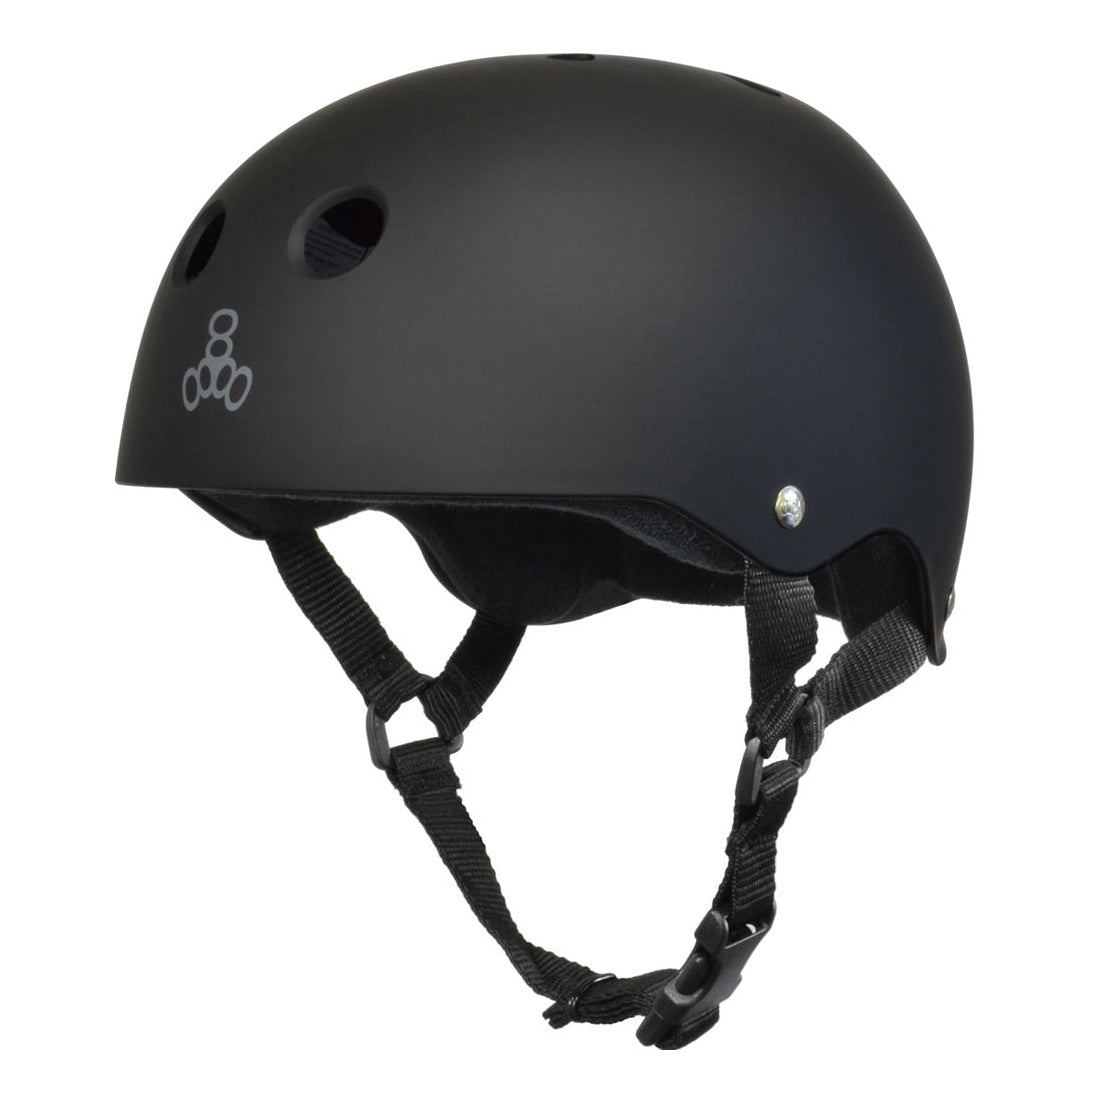 Triple 8 Skate SS Helmet - Black Rubber Helmets